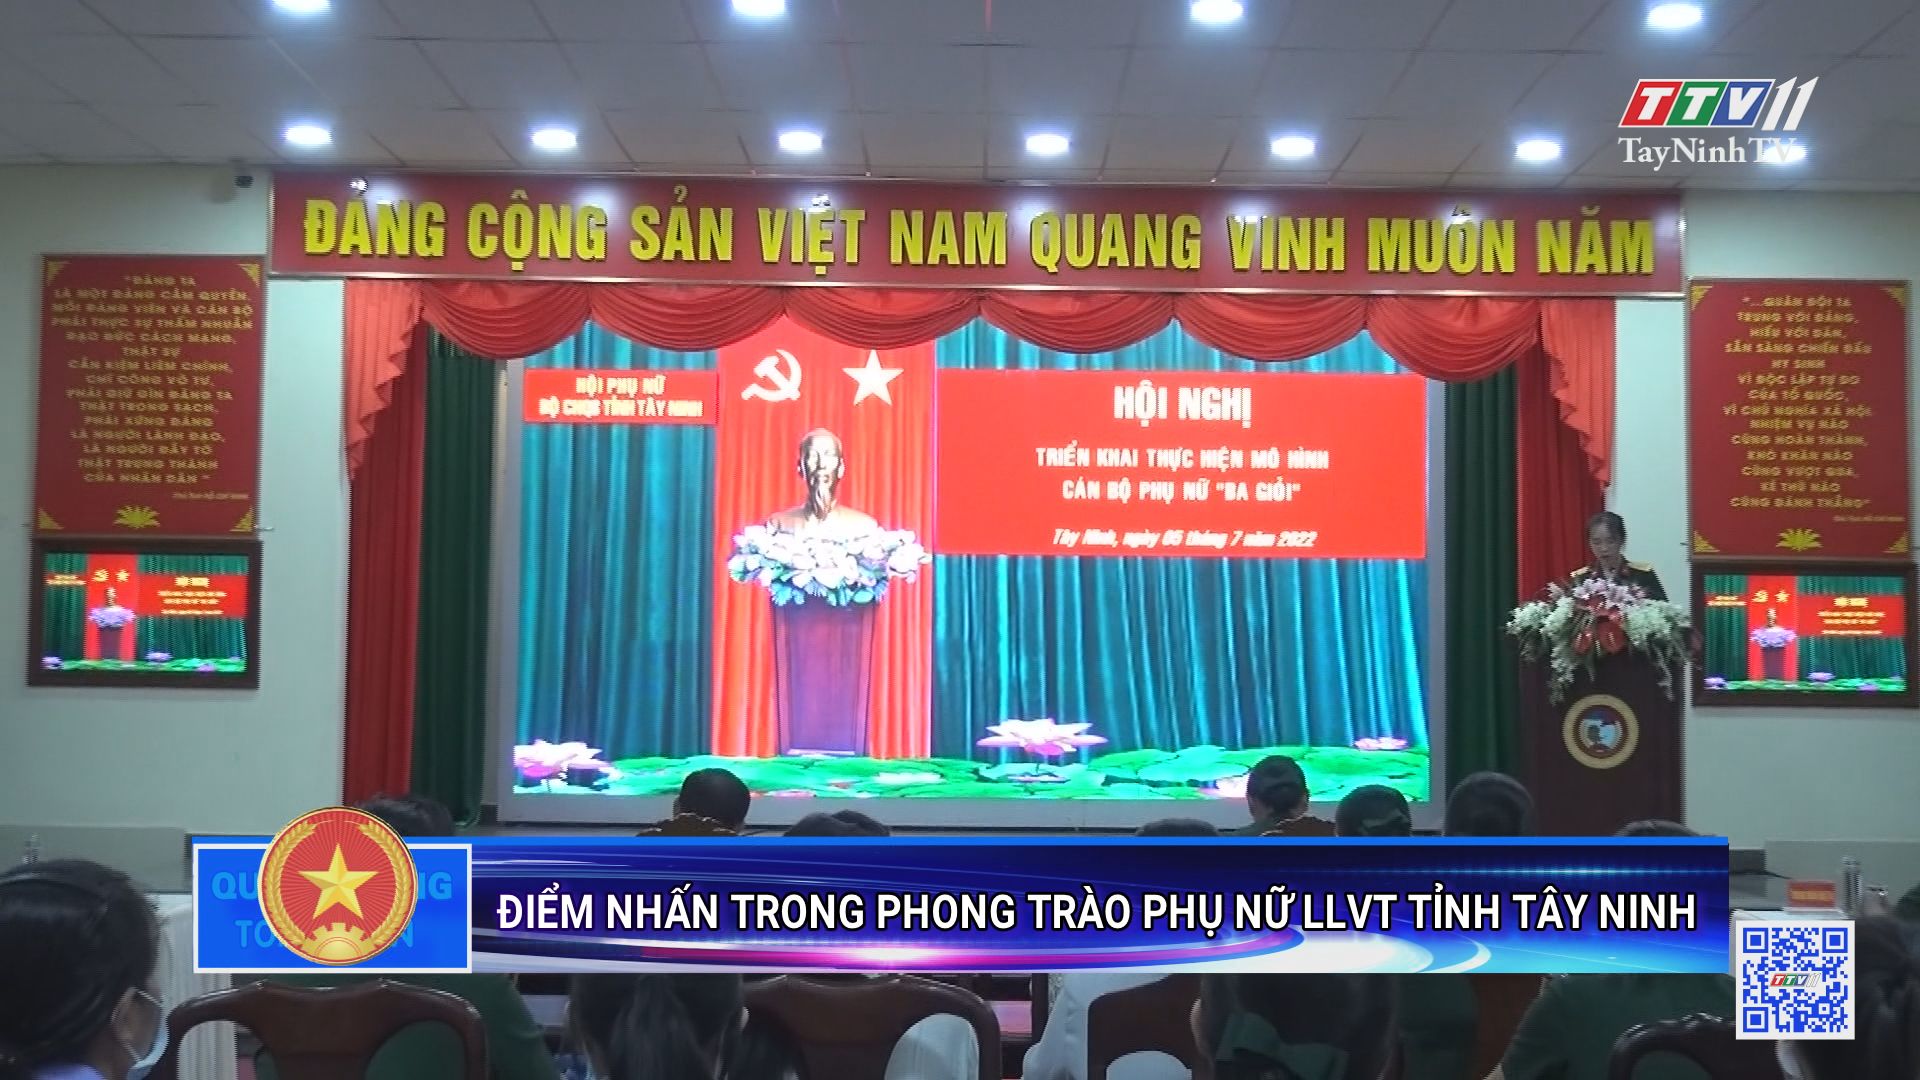 Điểm nhấn trong phong trào phụ nữ LLVT tỉnh Tây Ninh | Quốc phòng toàn dân | TayNinhTV